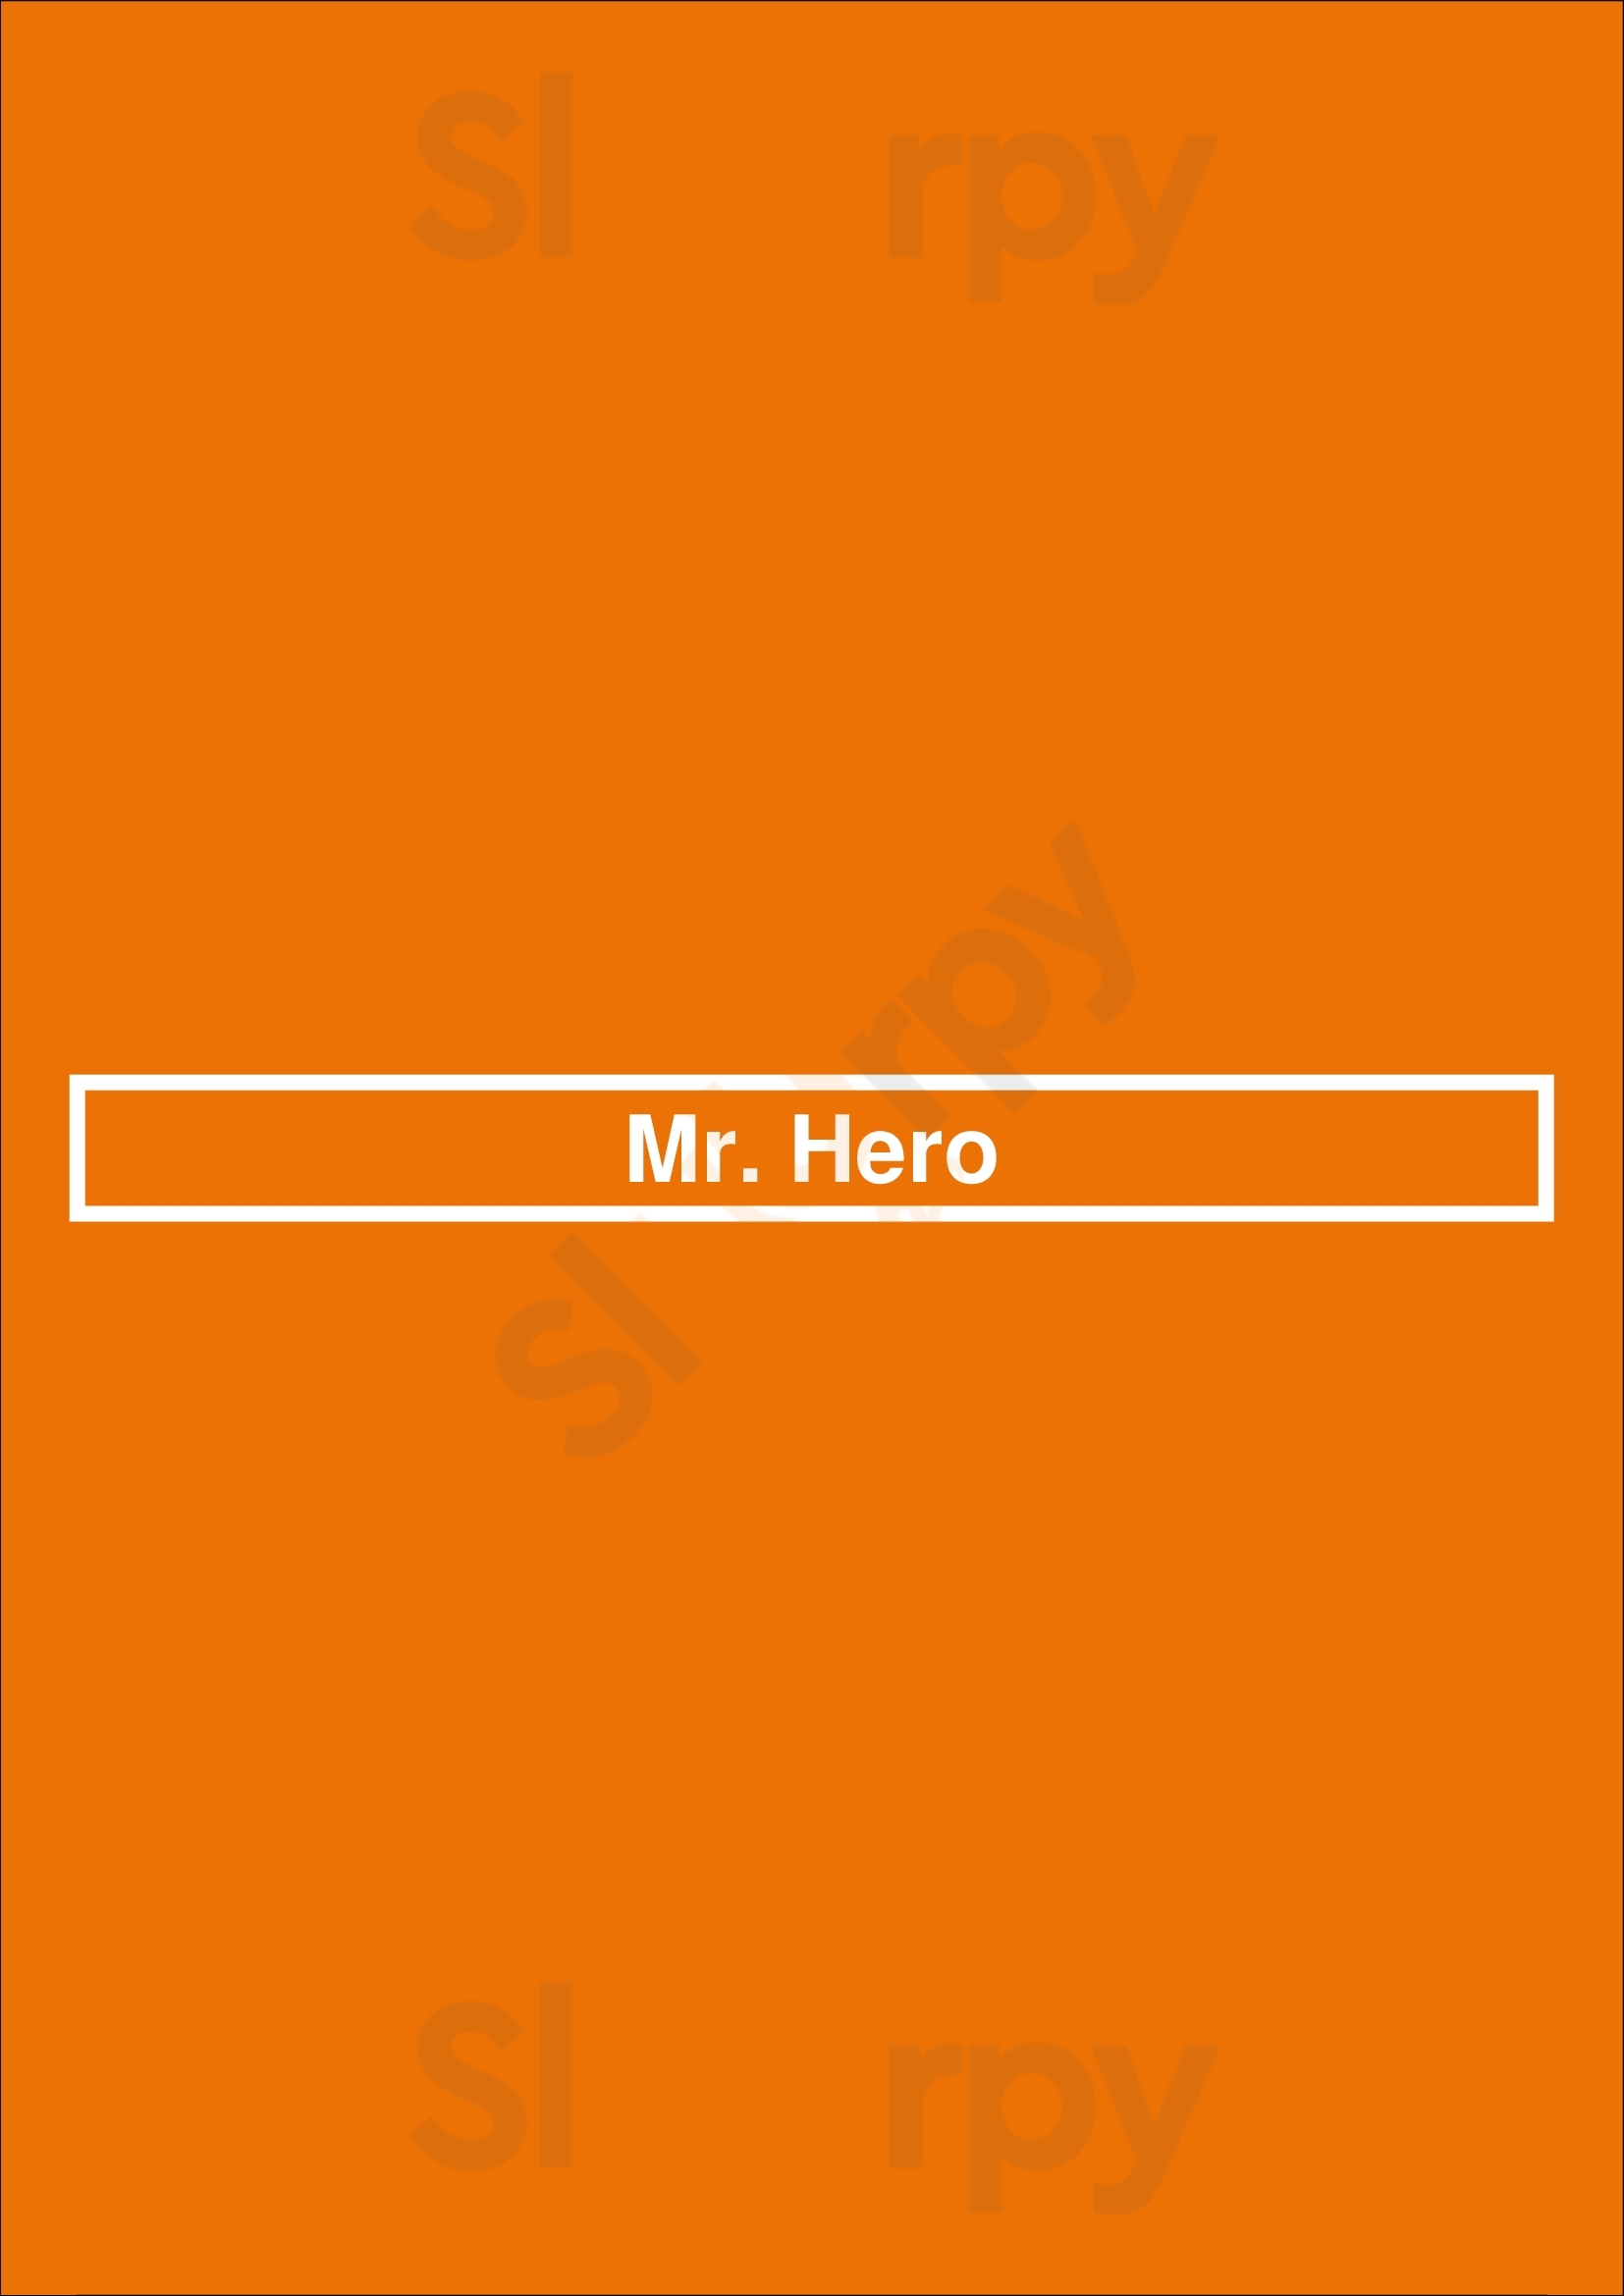 Mr. Hero Bedford Menu - 1